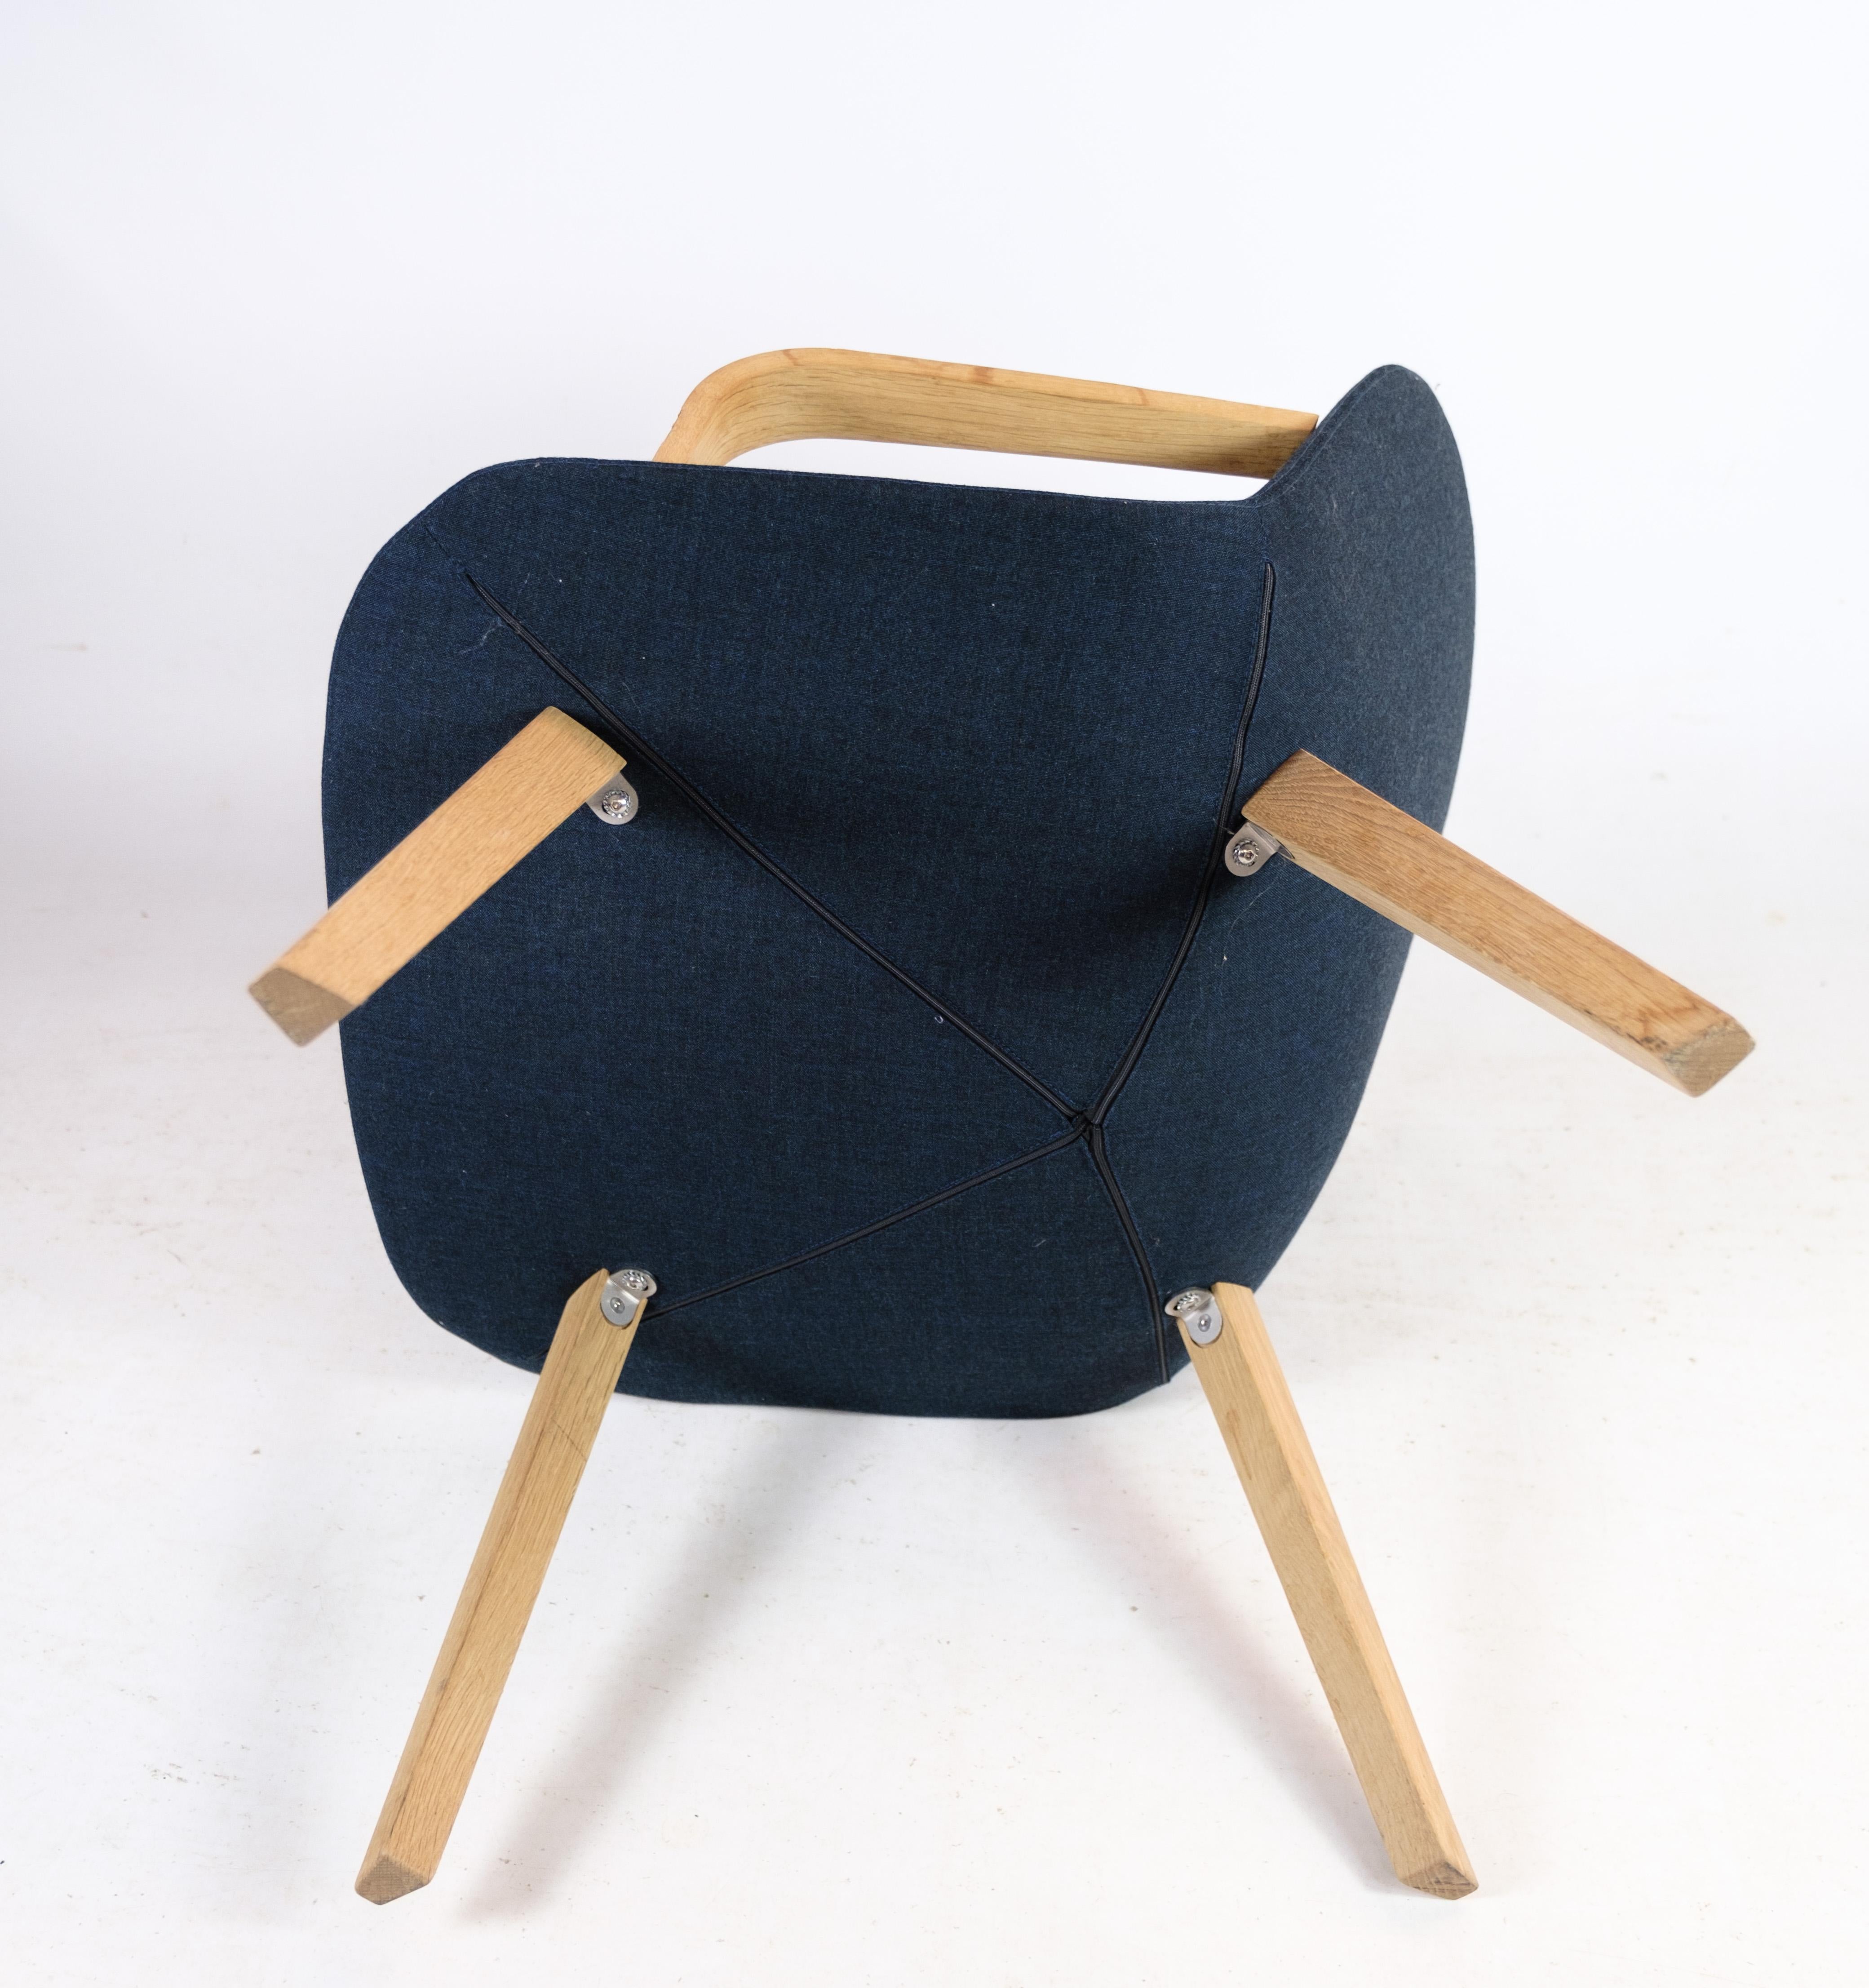 La chaise longue, modèle EJ 3, méticuleusement fabriquée en chêne avec un luxueux tissu en laine bleue par Erik Jørgensen, dans le cadre de la série réputée Eyes. Cette chaise exquise allie harmonieusement un design contemporain à un confort